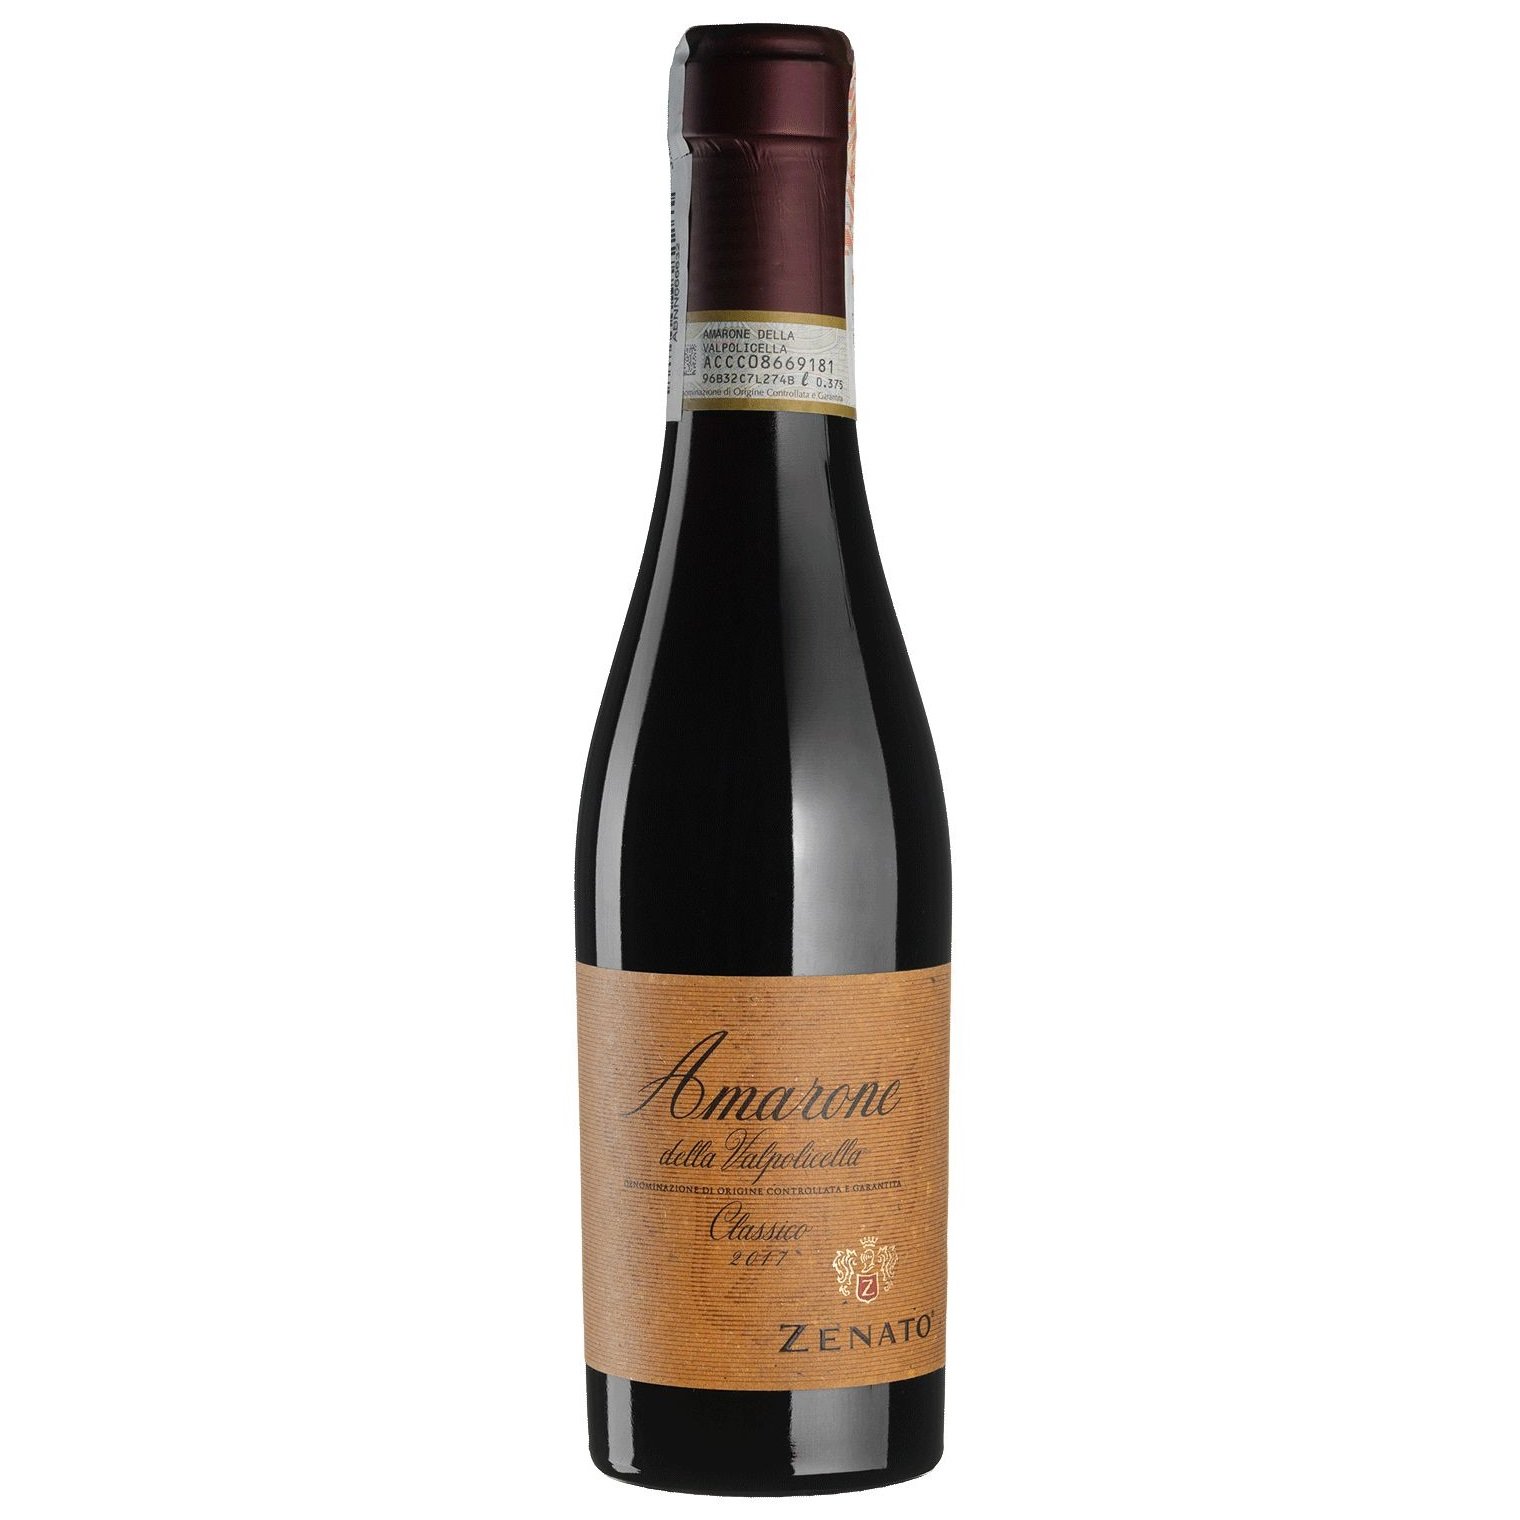 Вино Zenato Amarone della Valpolicella Classico 2017, красное, сухое, 0,375 л (W3253) - фото 1